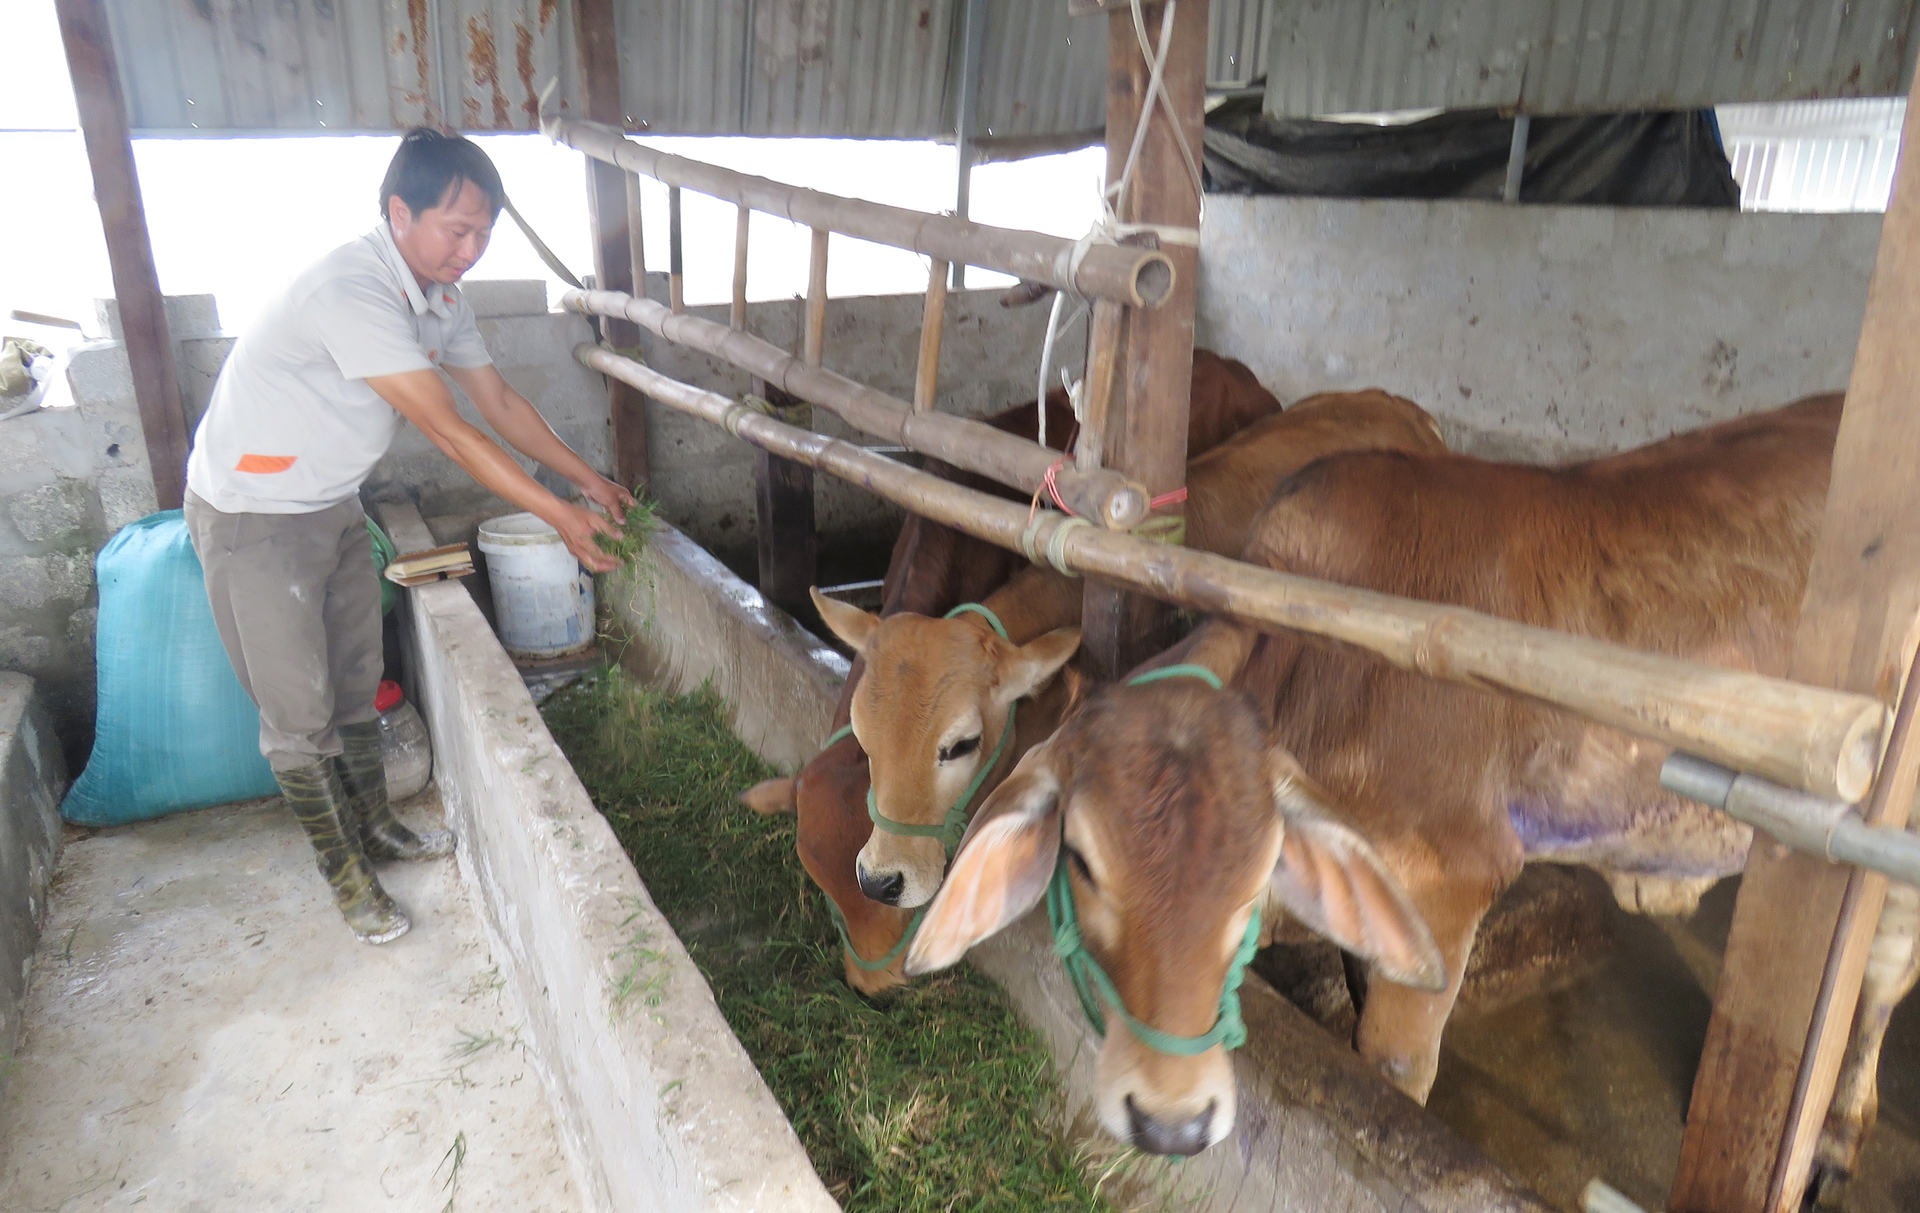 Việc thiếu vắng cán bộ thú y cơ sở khiến người chăn nuôi lo lắng trước dịch bệnh trên đàn gia súc đang ngày một phức tạp hơn. Ảnh: Thanh Nga.